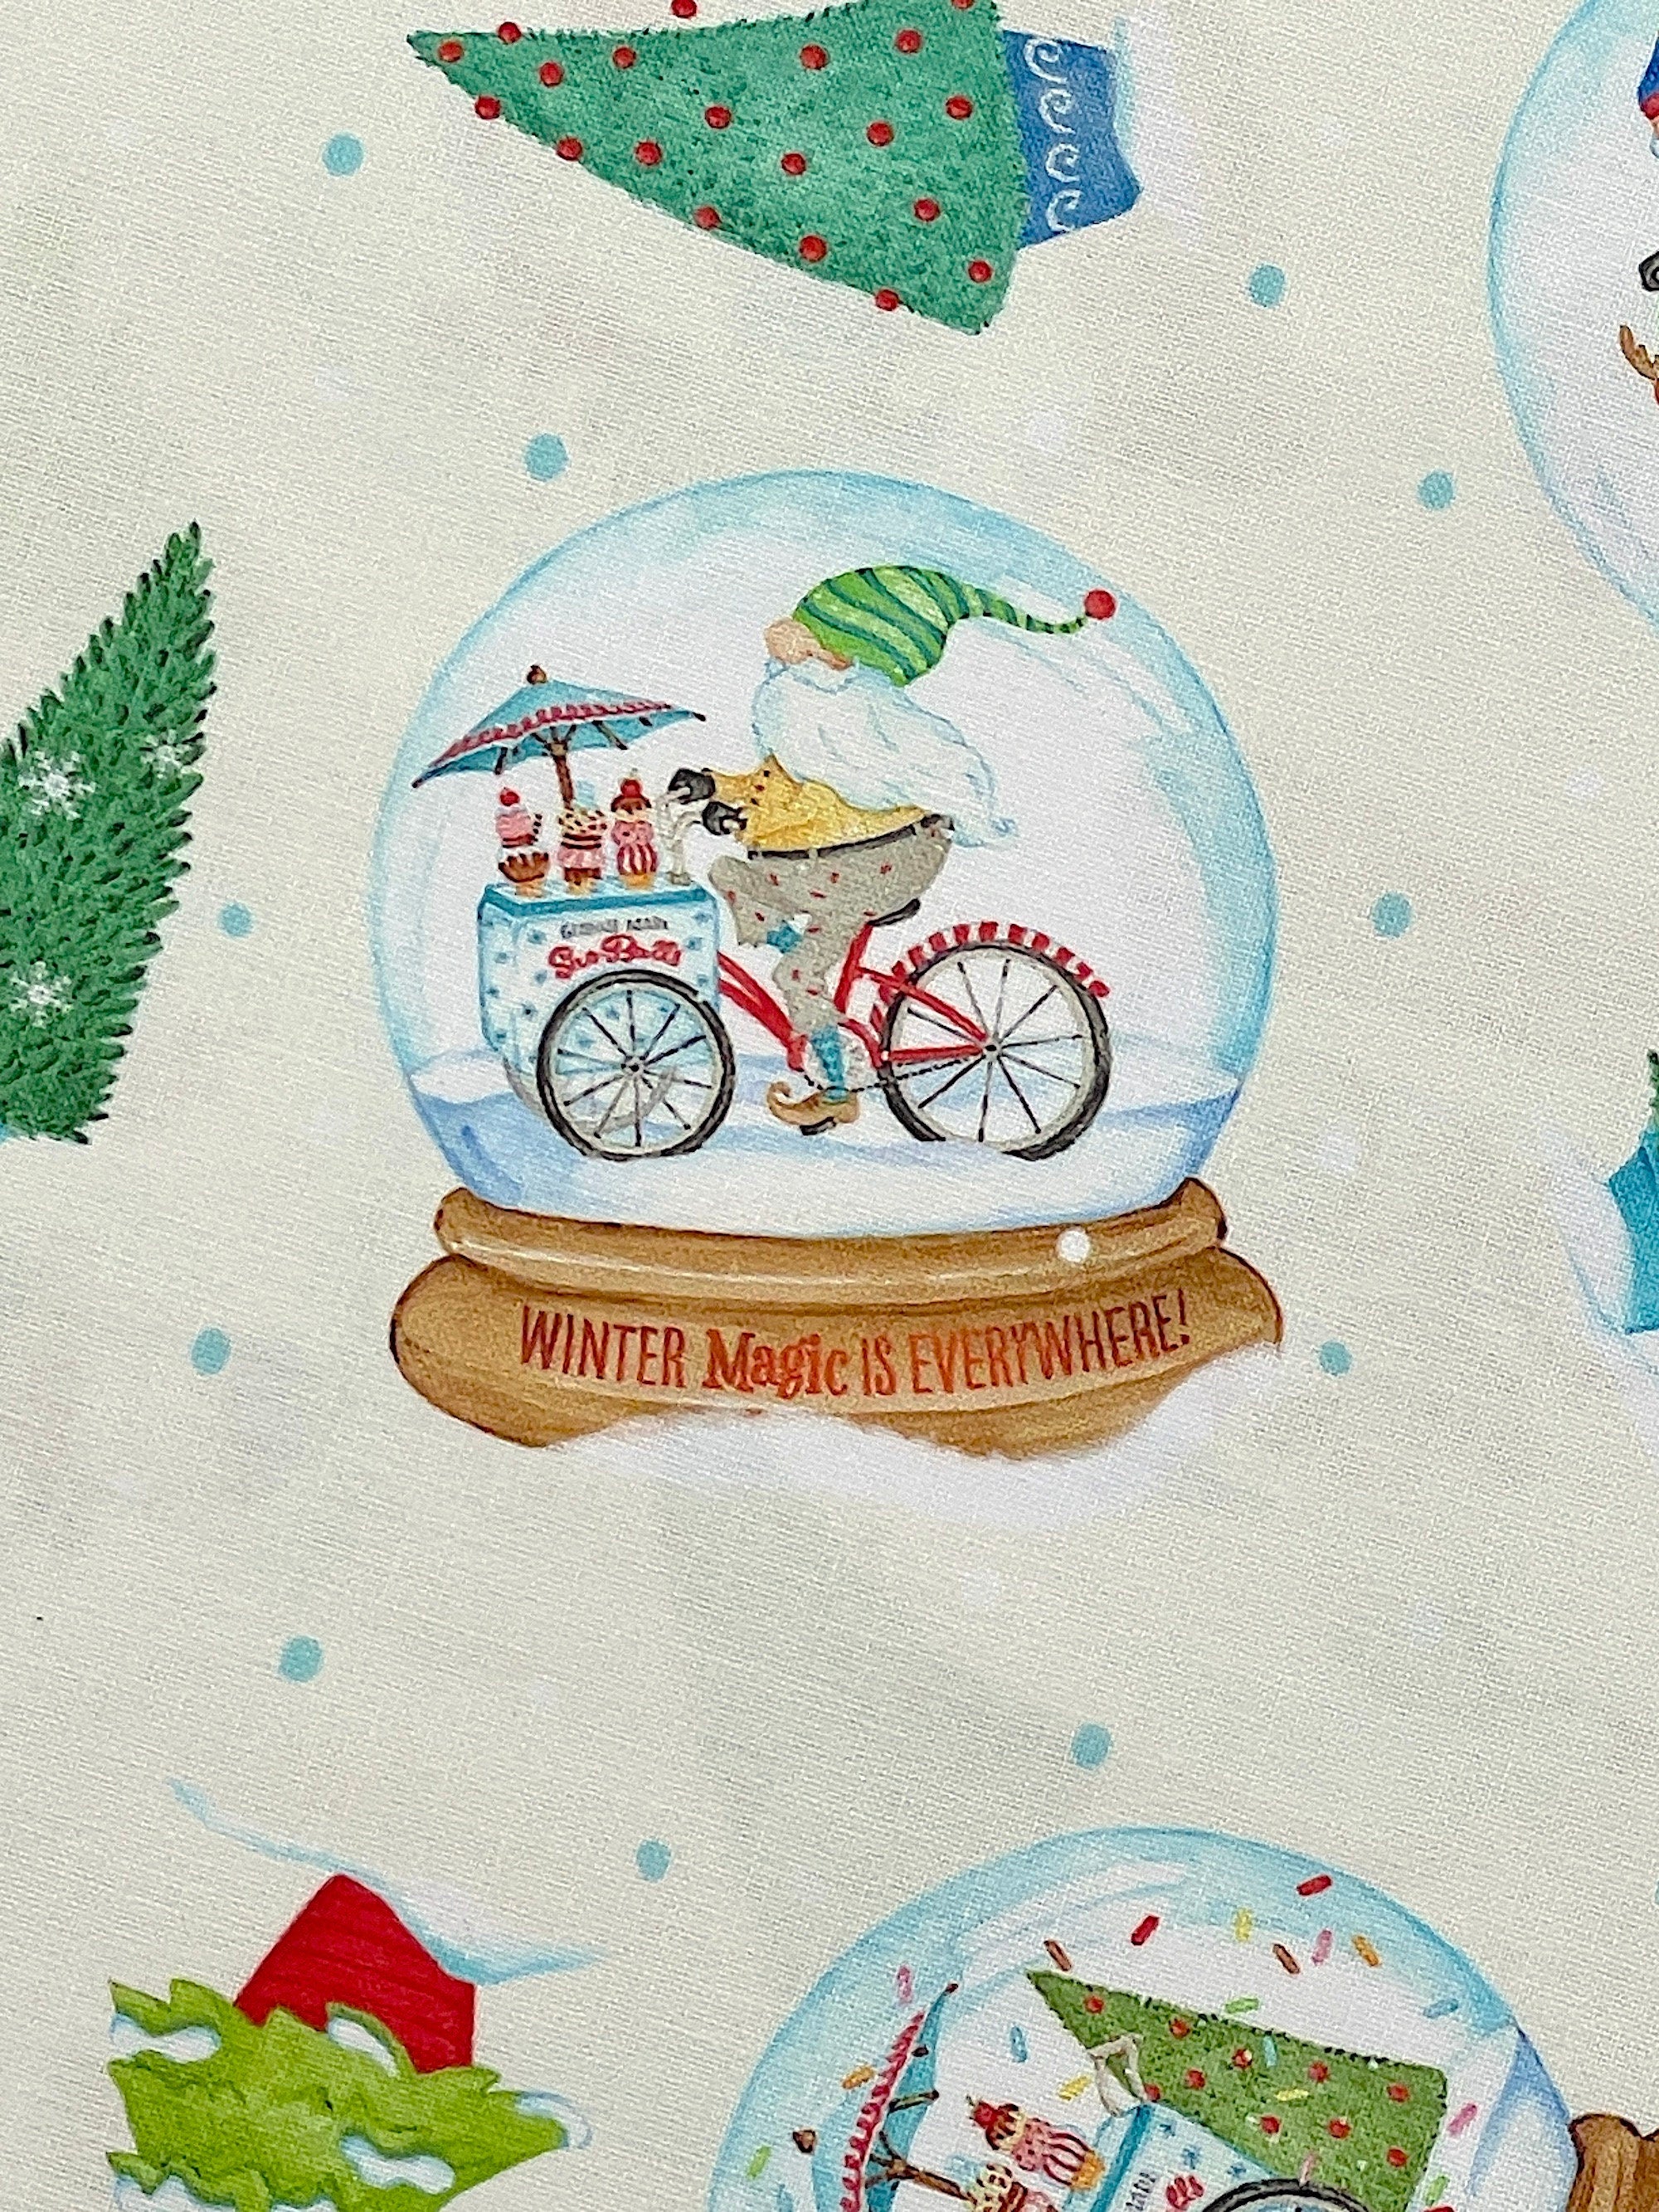 Close up of a gnome riding a bike inside of a snow globe.